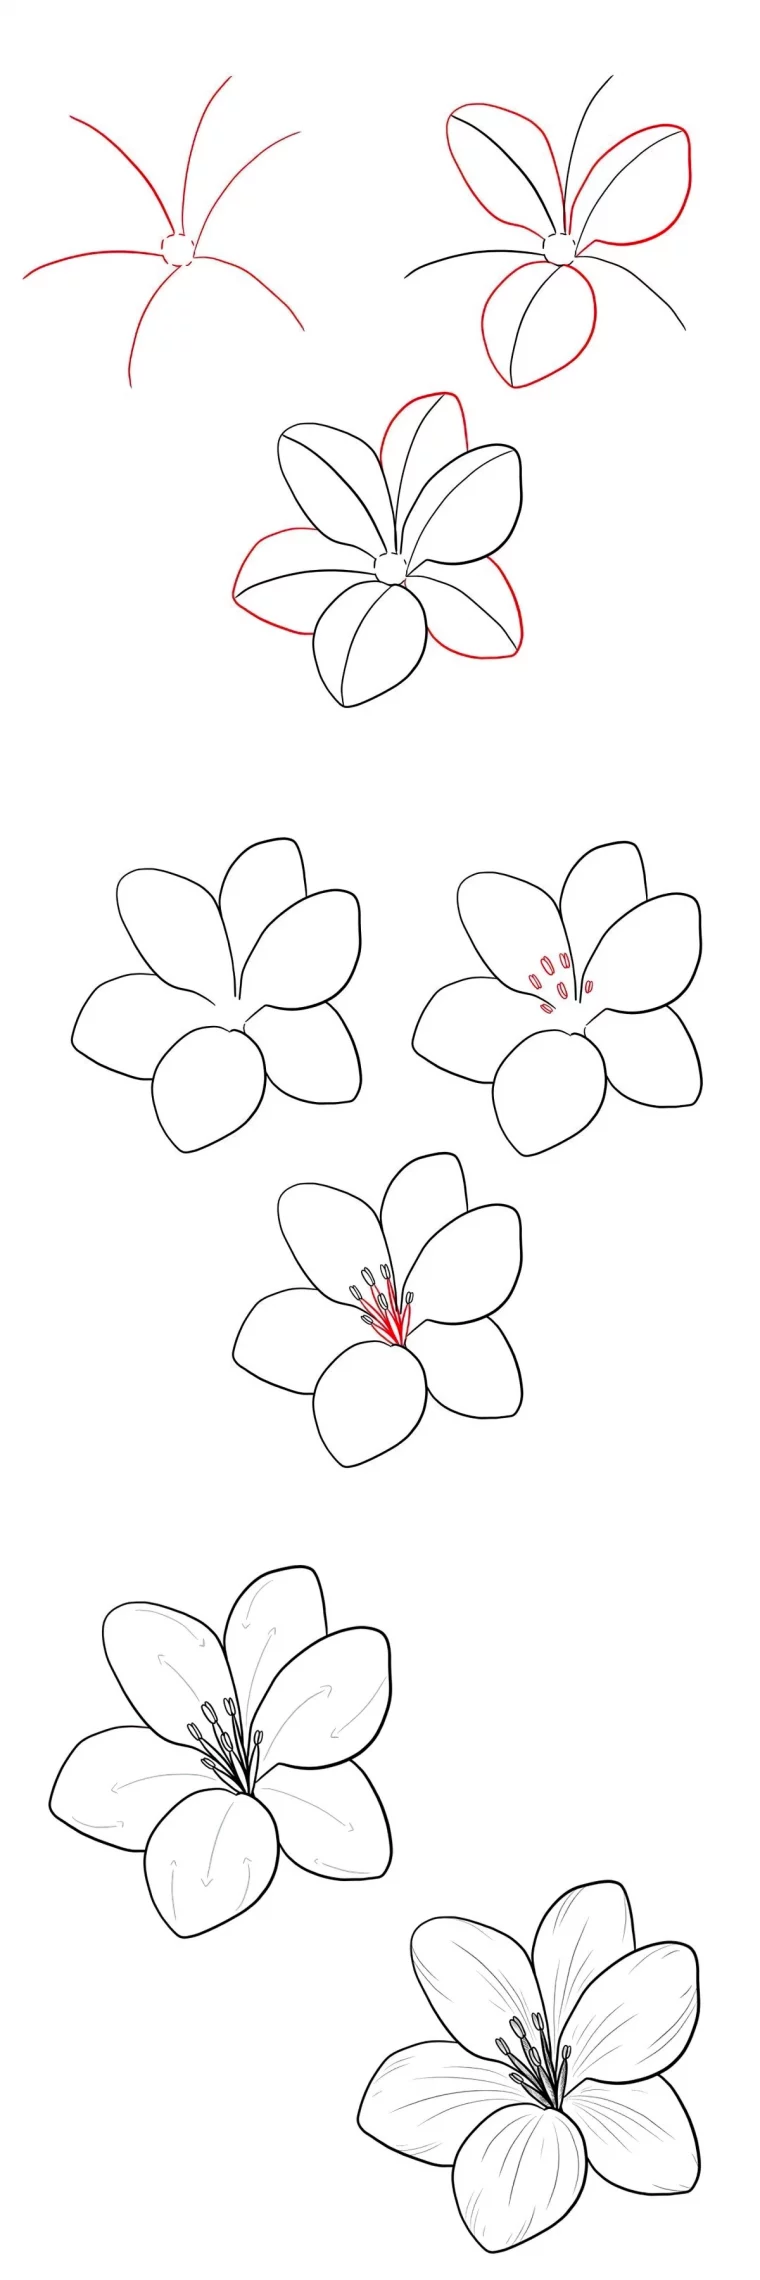 dessin fleur de lys pas a pas facile lignes petales courbes